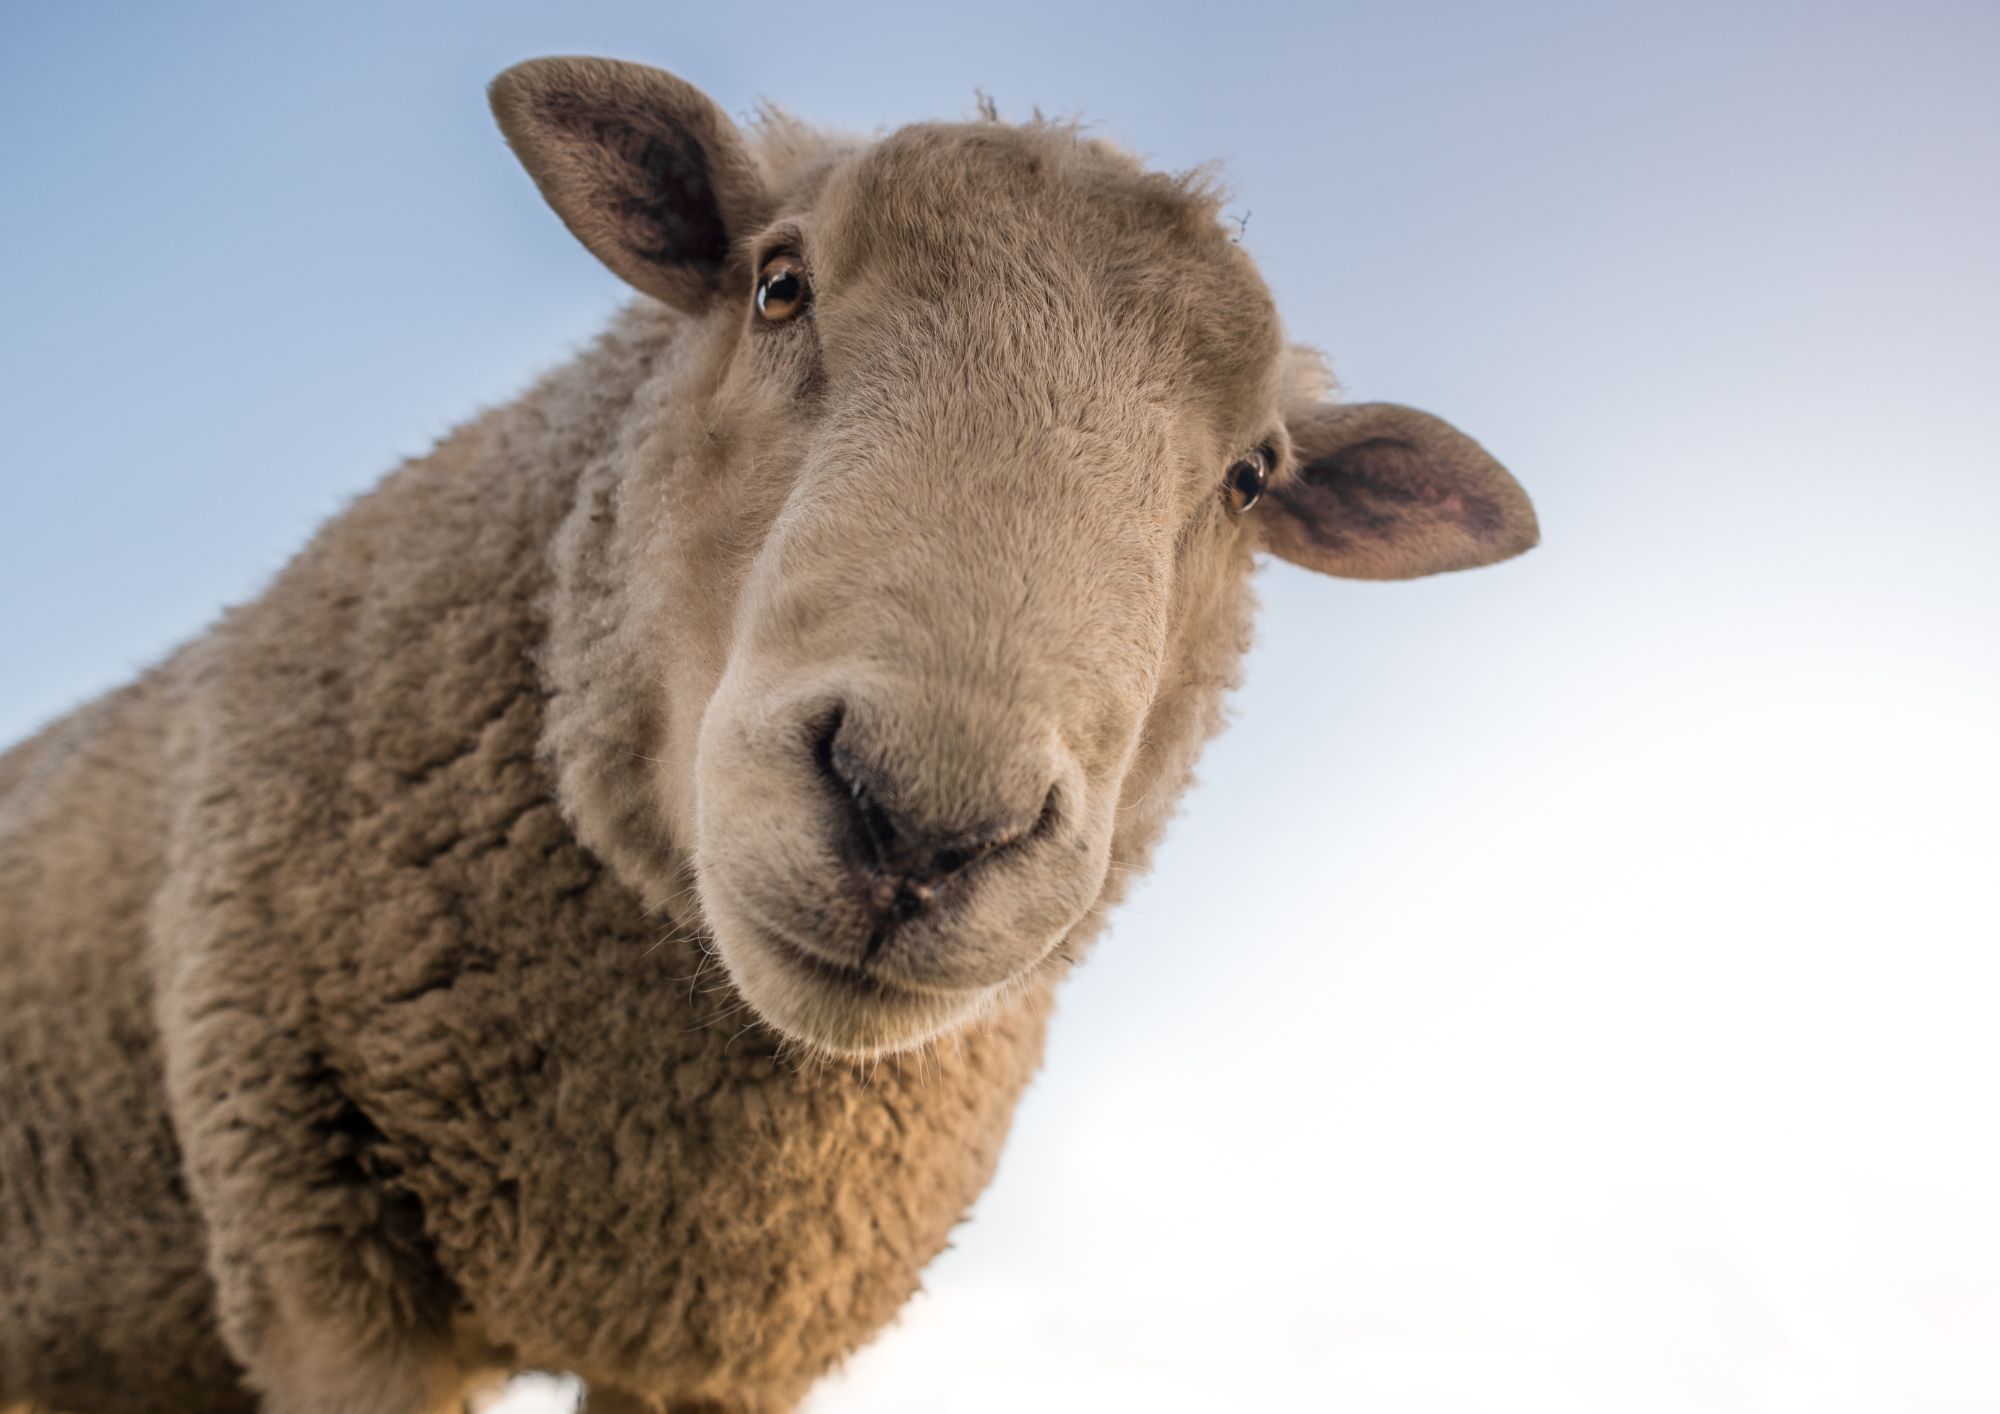 A la granja d'ovelles a l'Empordà t'esperem